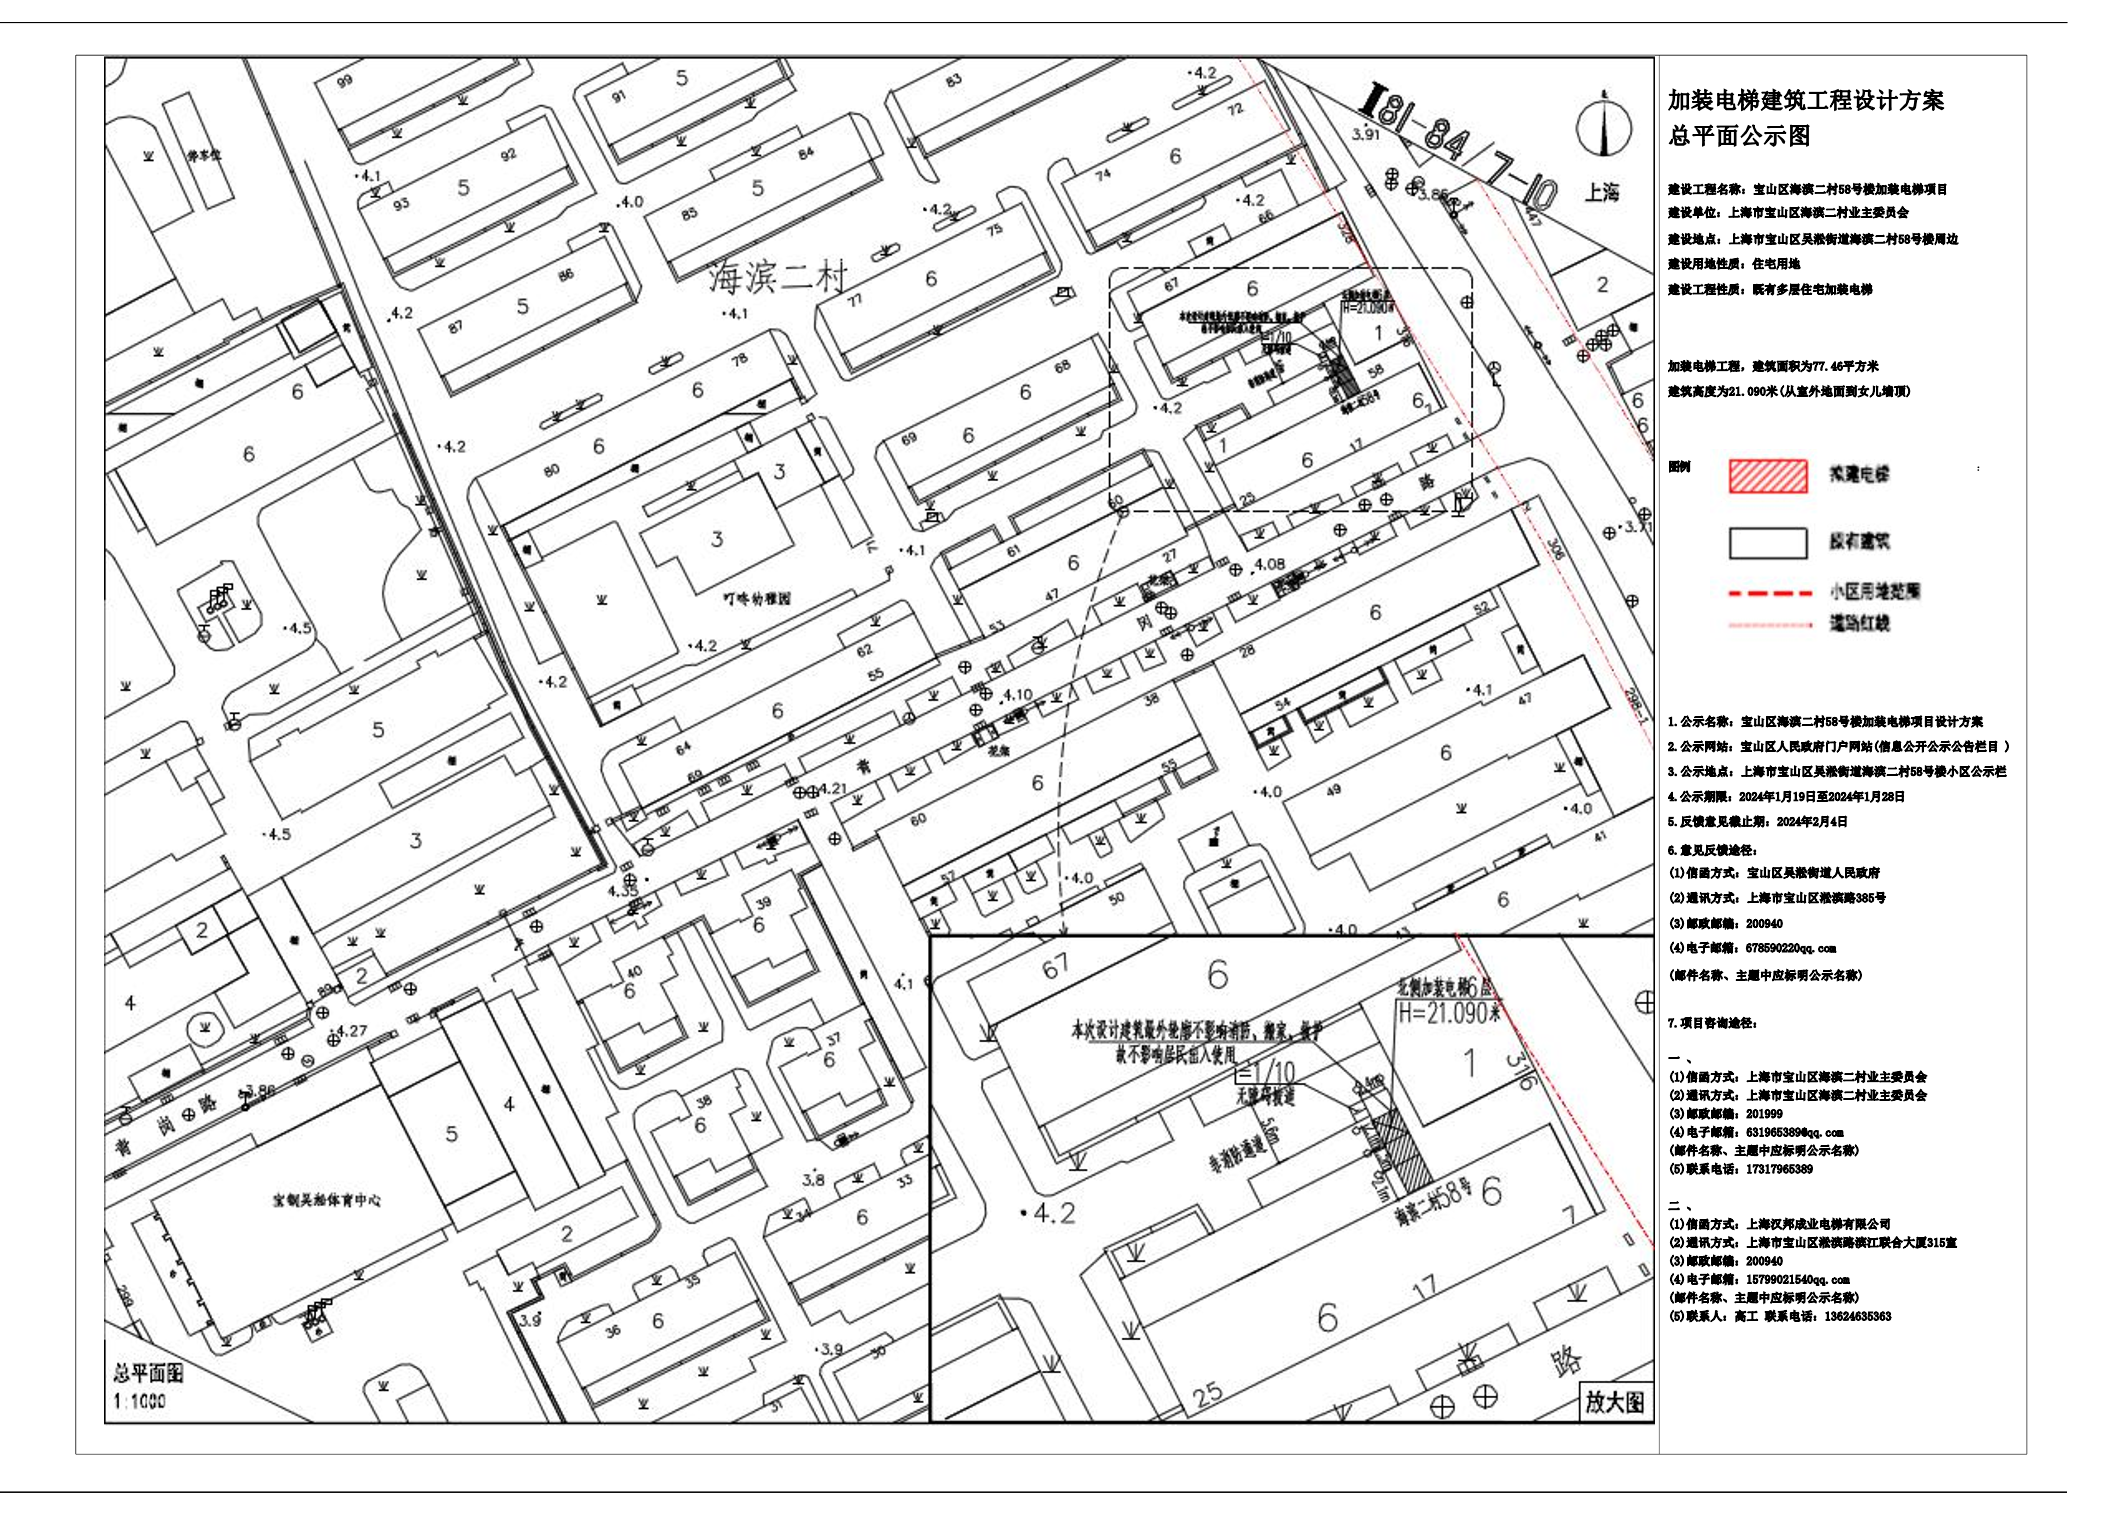 宝山区海滨二村58号楼加装电梯总平面图公示图.pdf